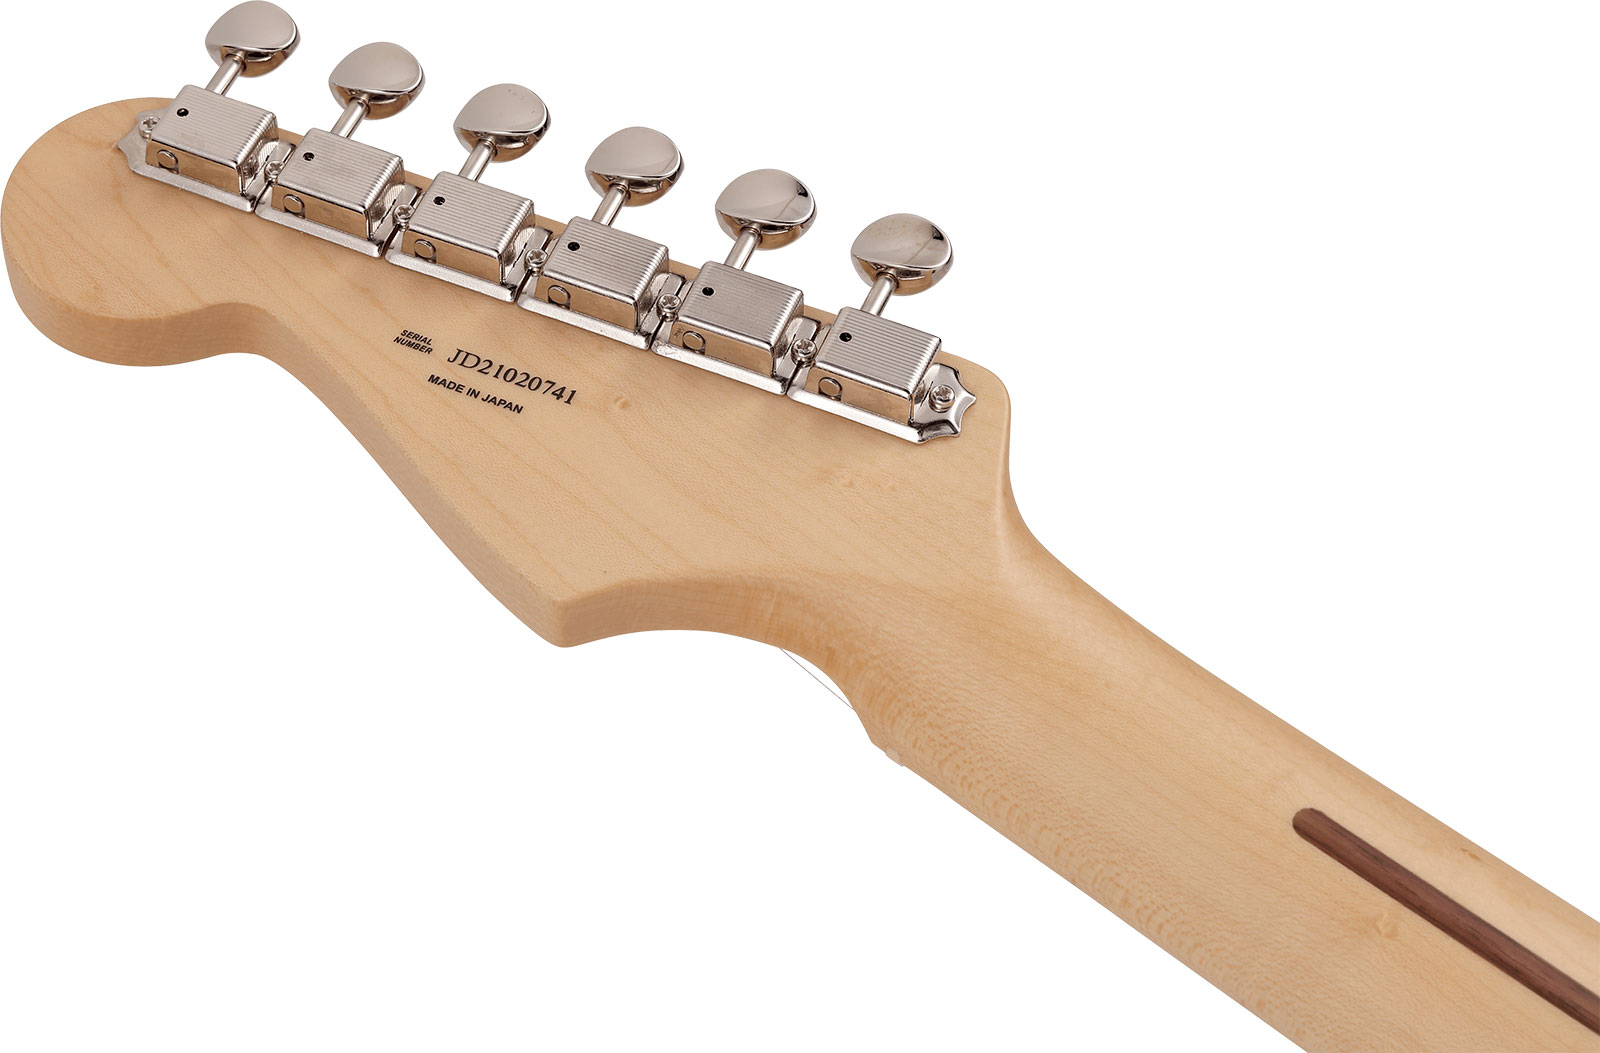 Fender Strat Junior Mij Jap 3s Trem Rw - Satin Shell Pink - Elektrische gitaar voor kinderen - Variation 3